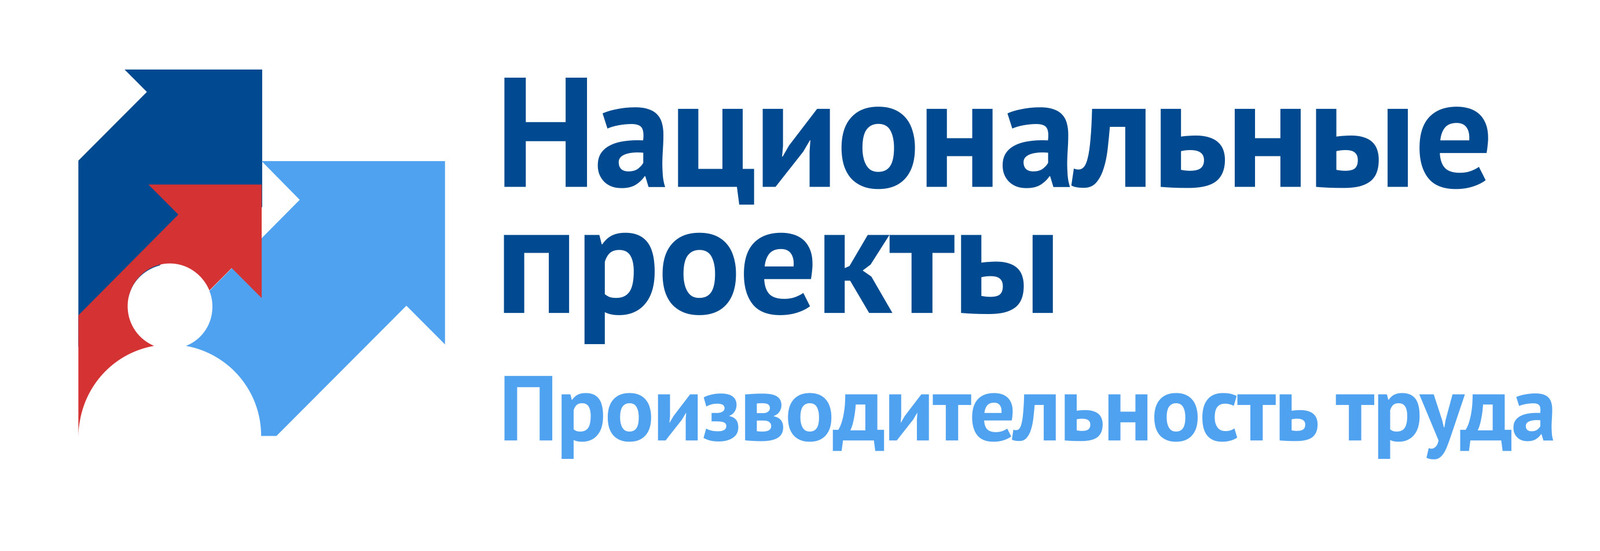 В Башкортостане каждый пятый участник нацпроекта «Производительность труда» — предприятие АПК